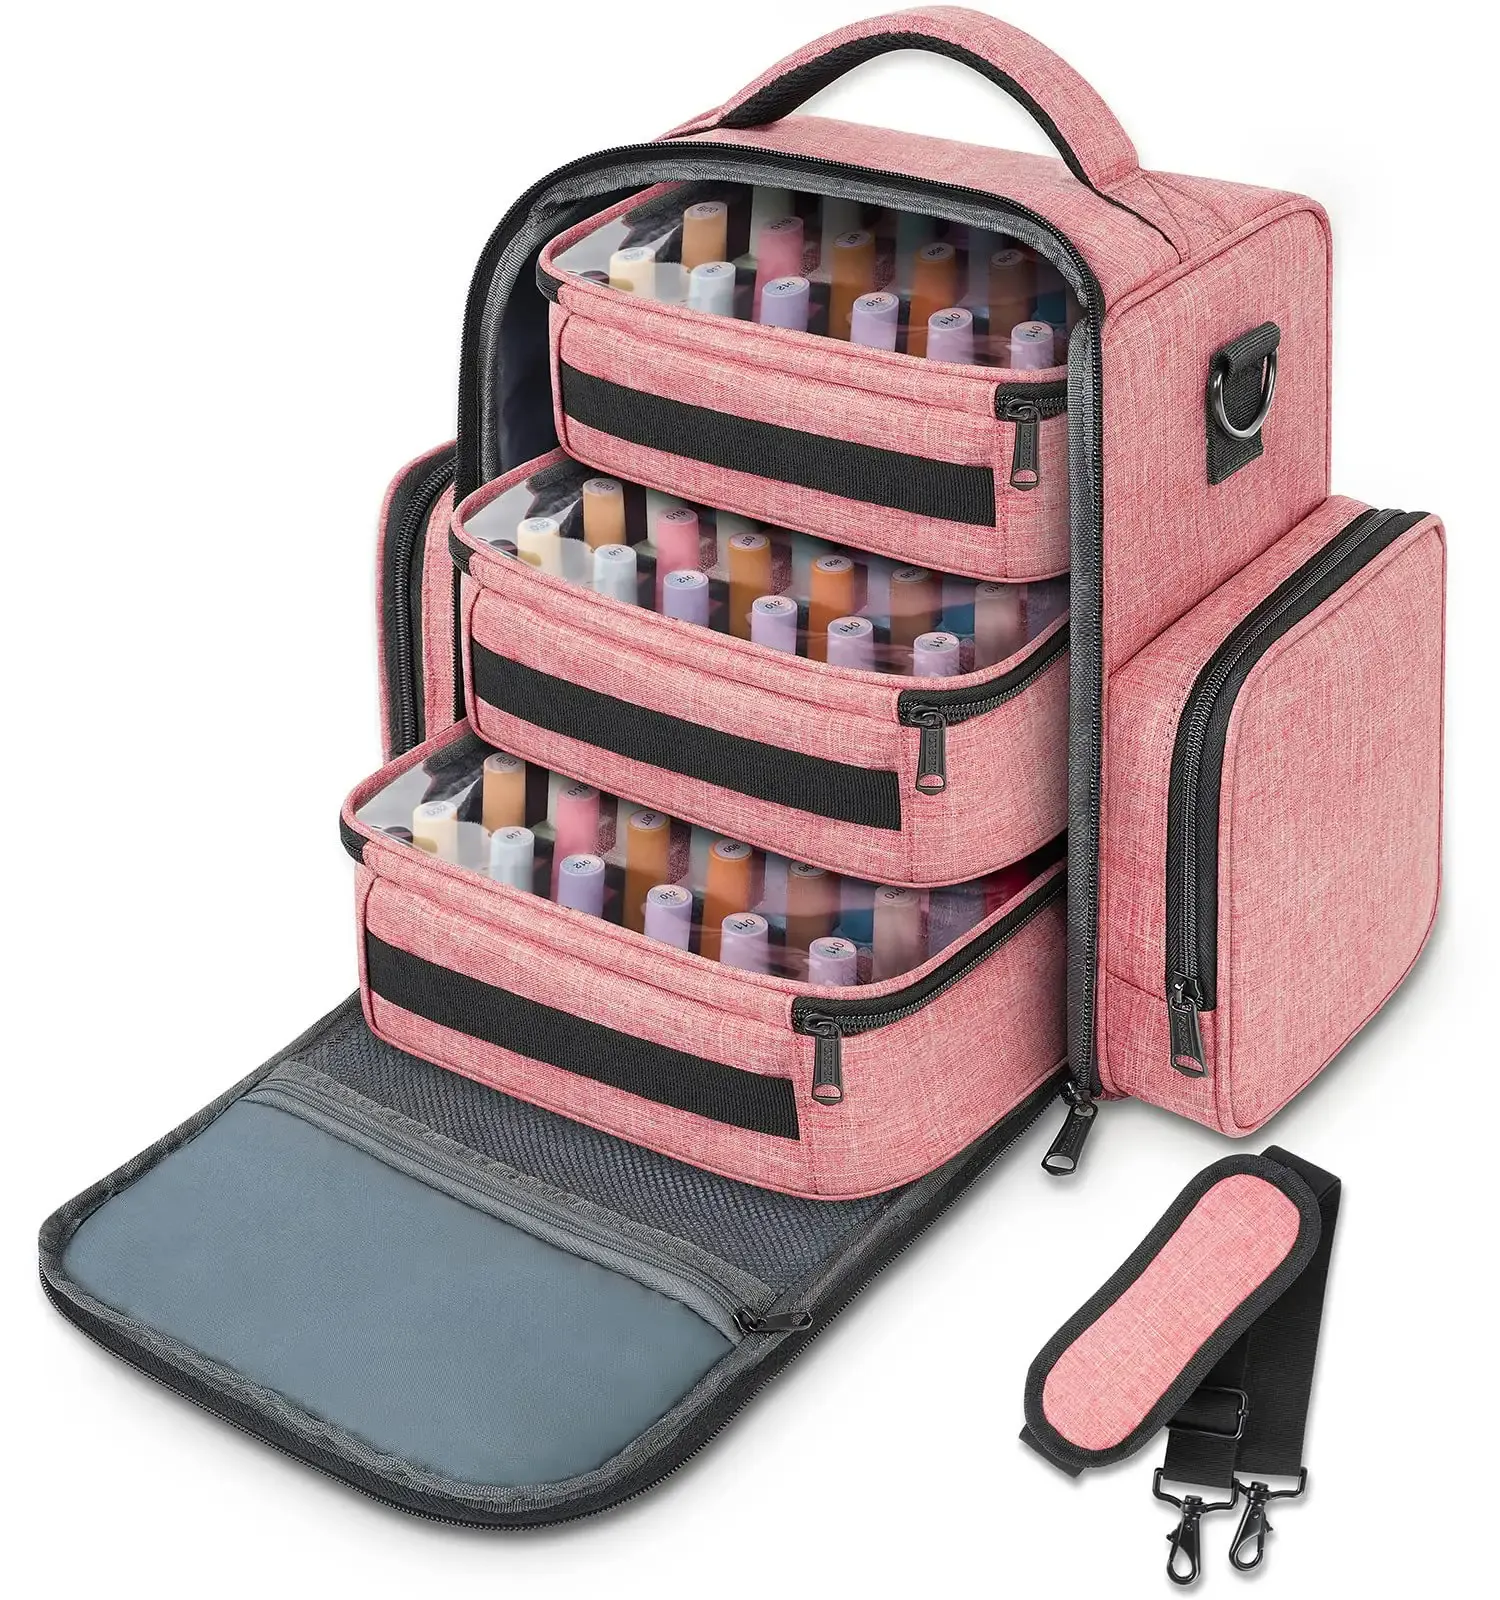 공장 사용자 정의 디자인 여행 매니큐어 주최자 배낭 도구 보관 가방 72 병 매니큐어 가방 보관